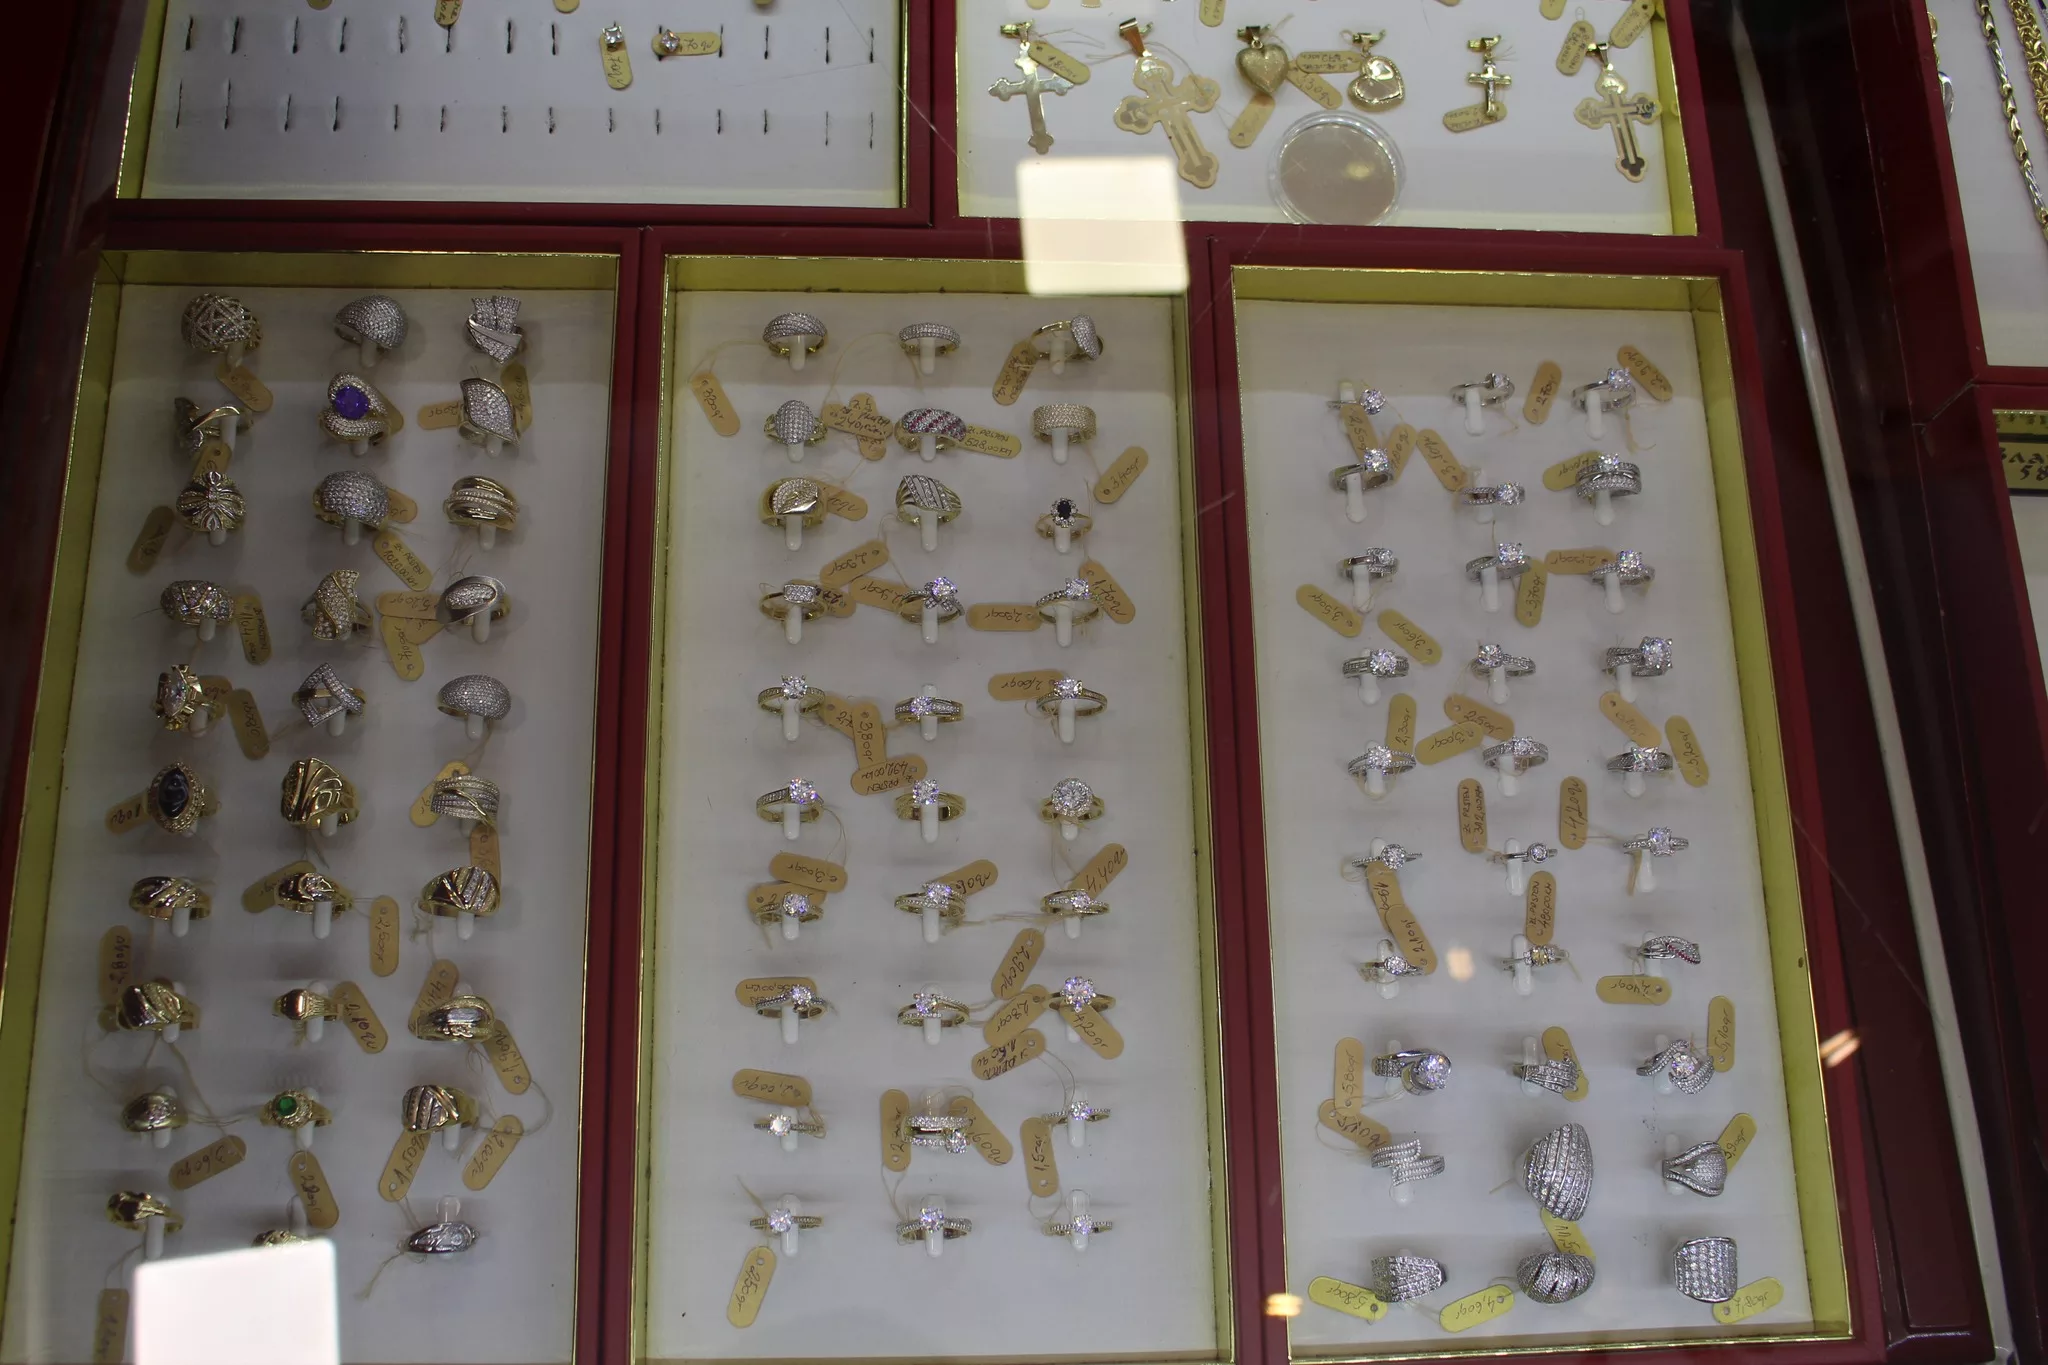 Za najvažnije i najljepše trenutke u životu, zvornički “Zlatar SM” izrađuje sve vrste zlatnog nakita skoro 70 godina